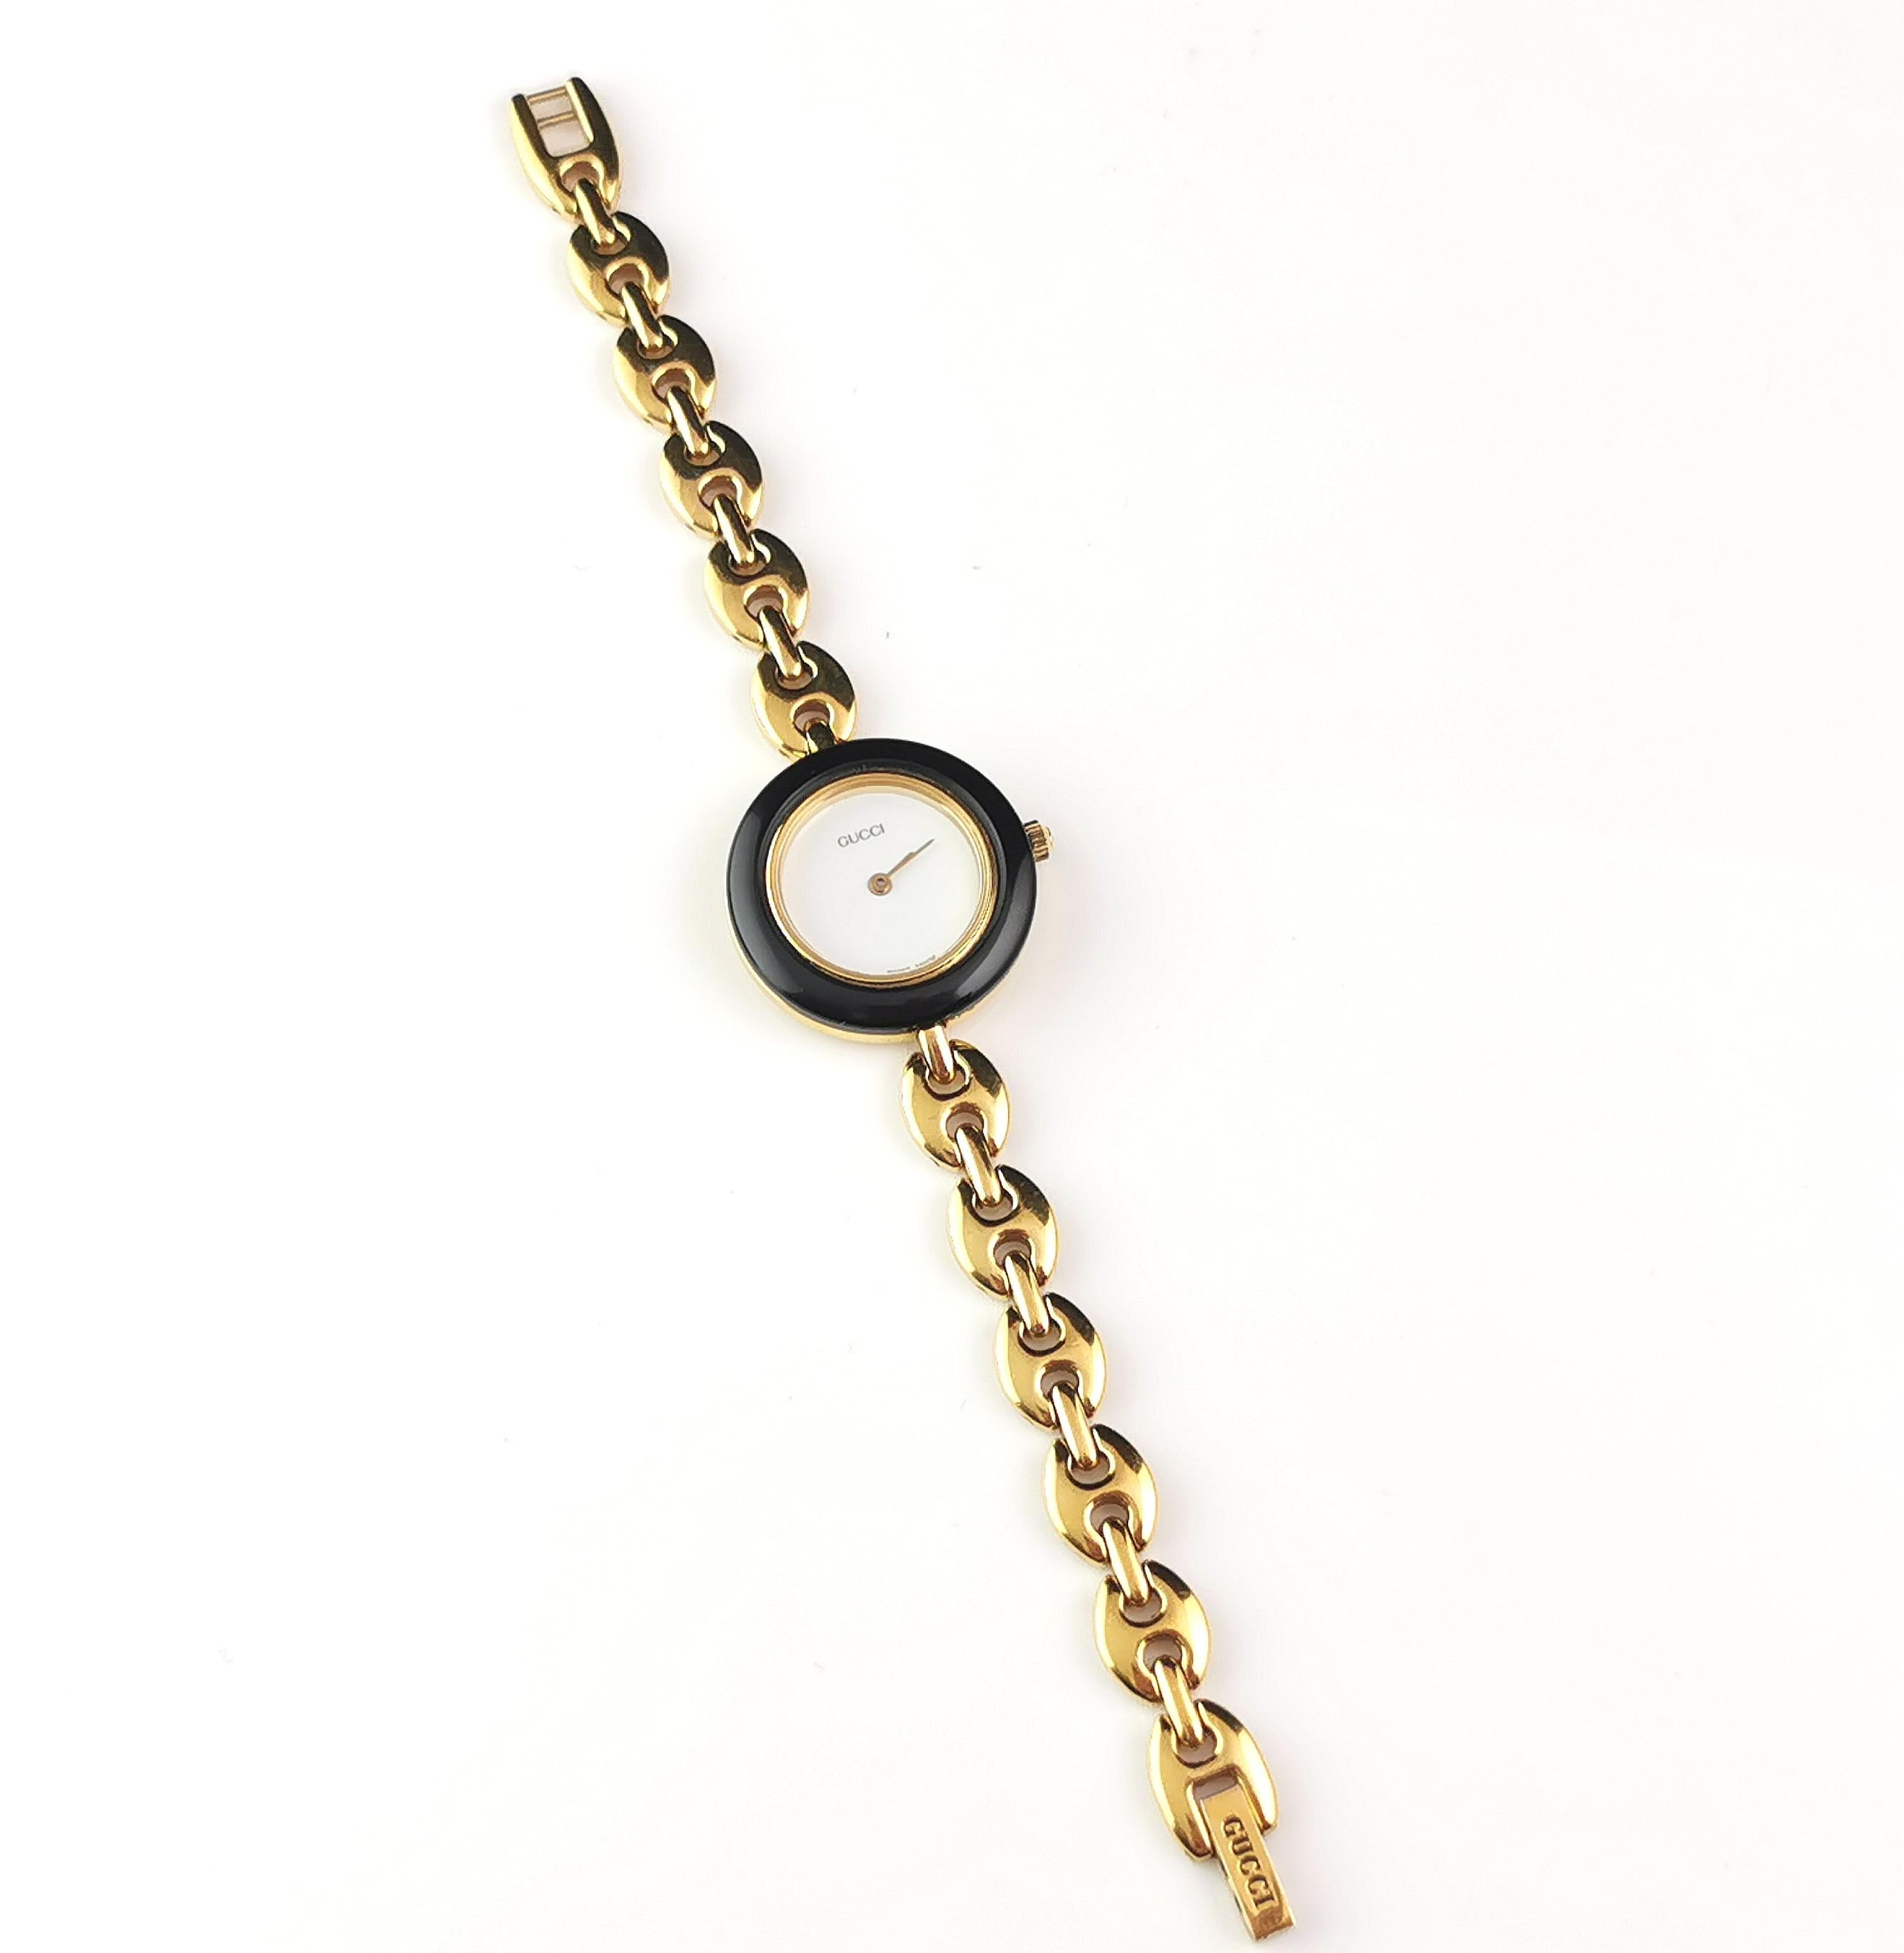 Vintage Gucci 11/12.2 gold plated ladies wristwatch, bracelet strap, Bezels 4